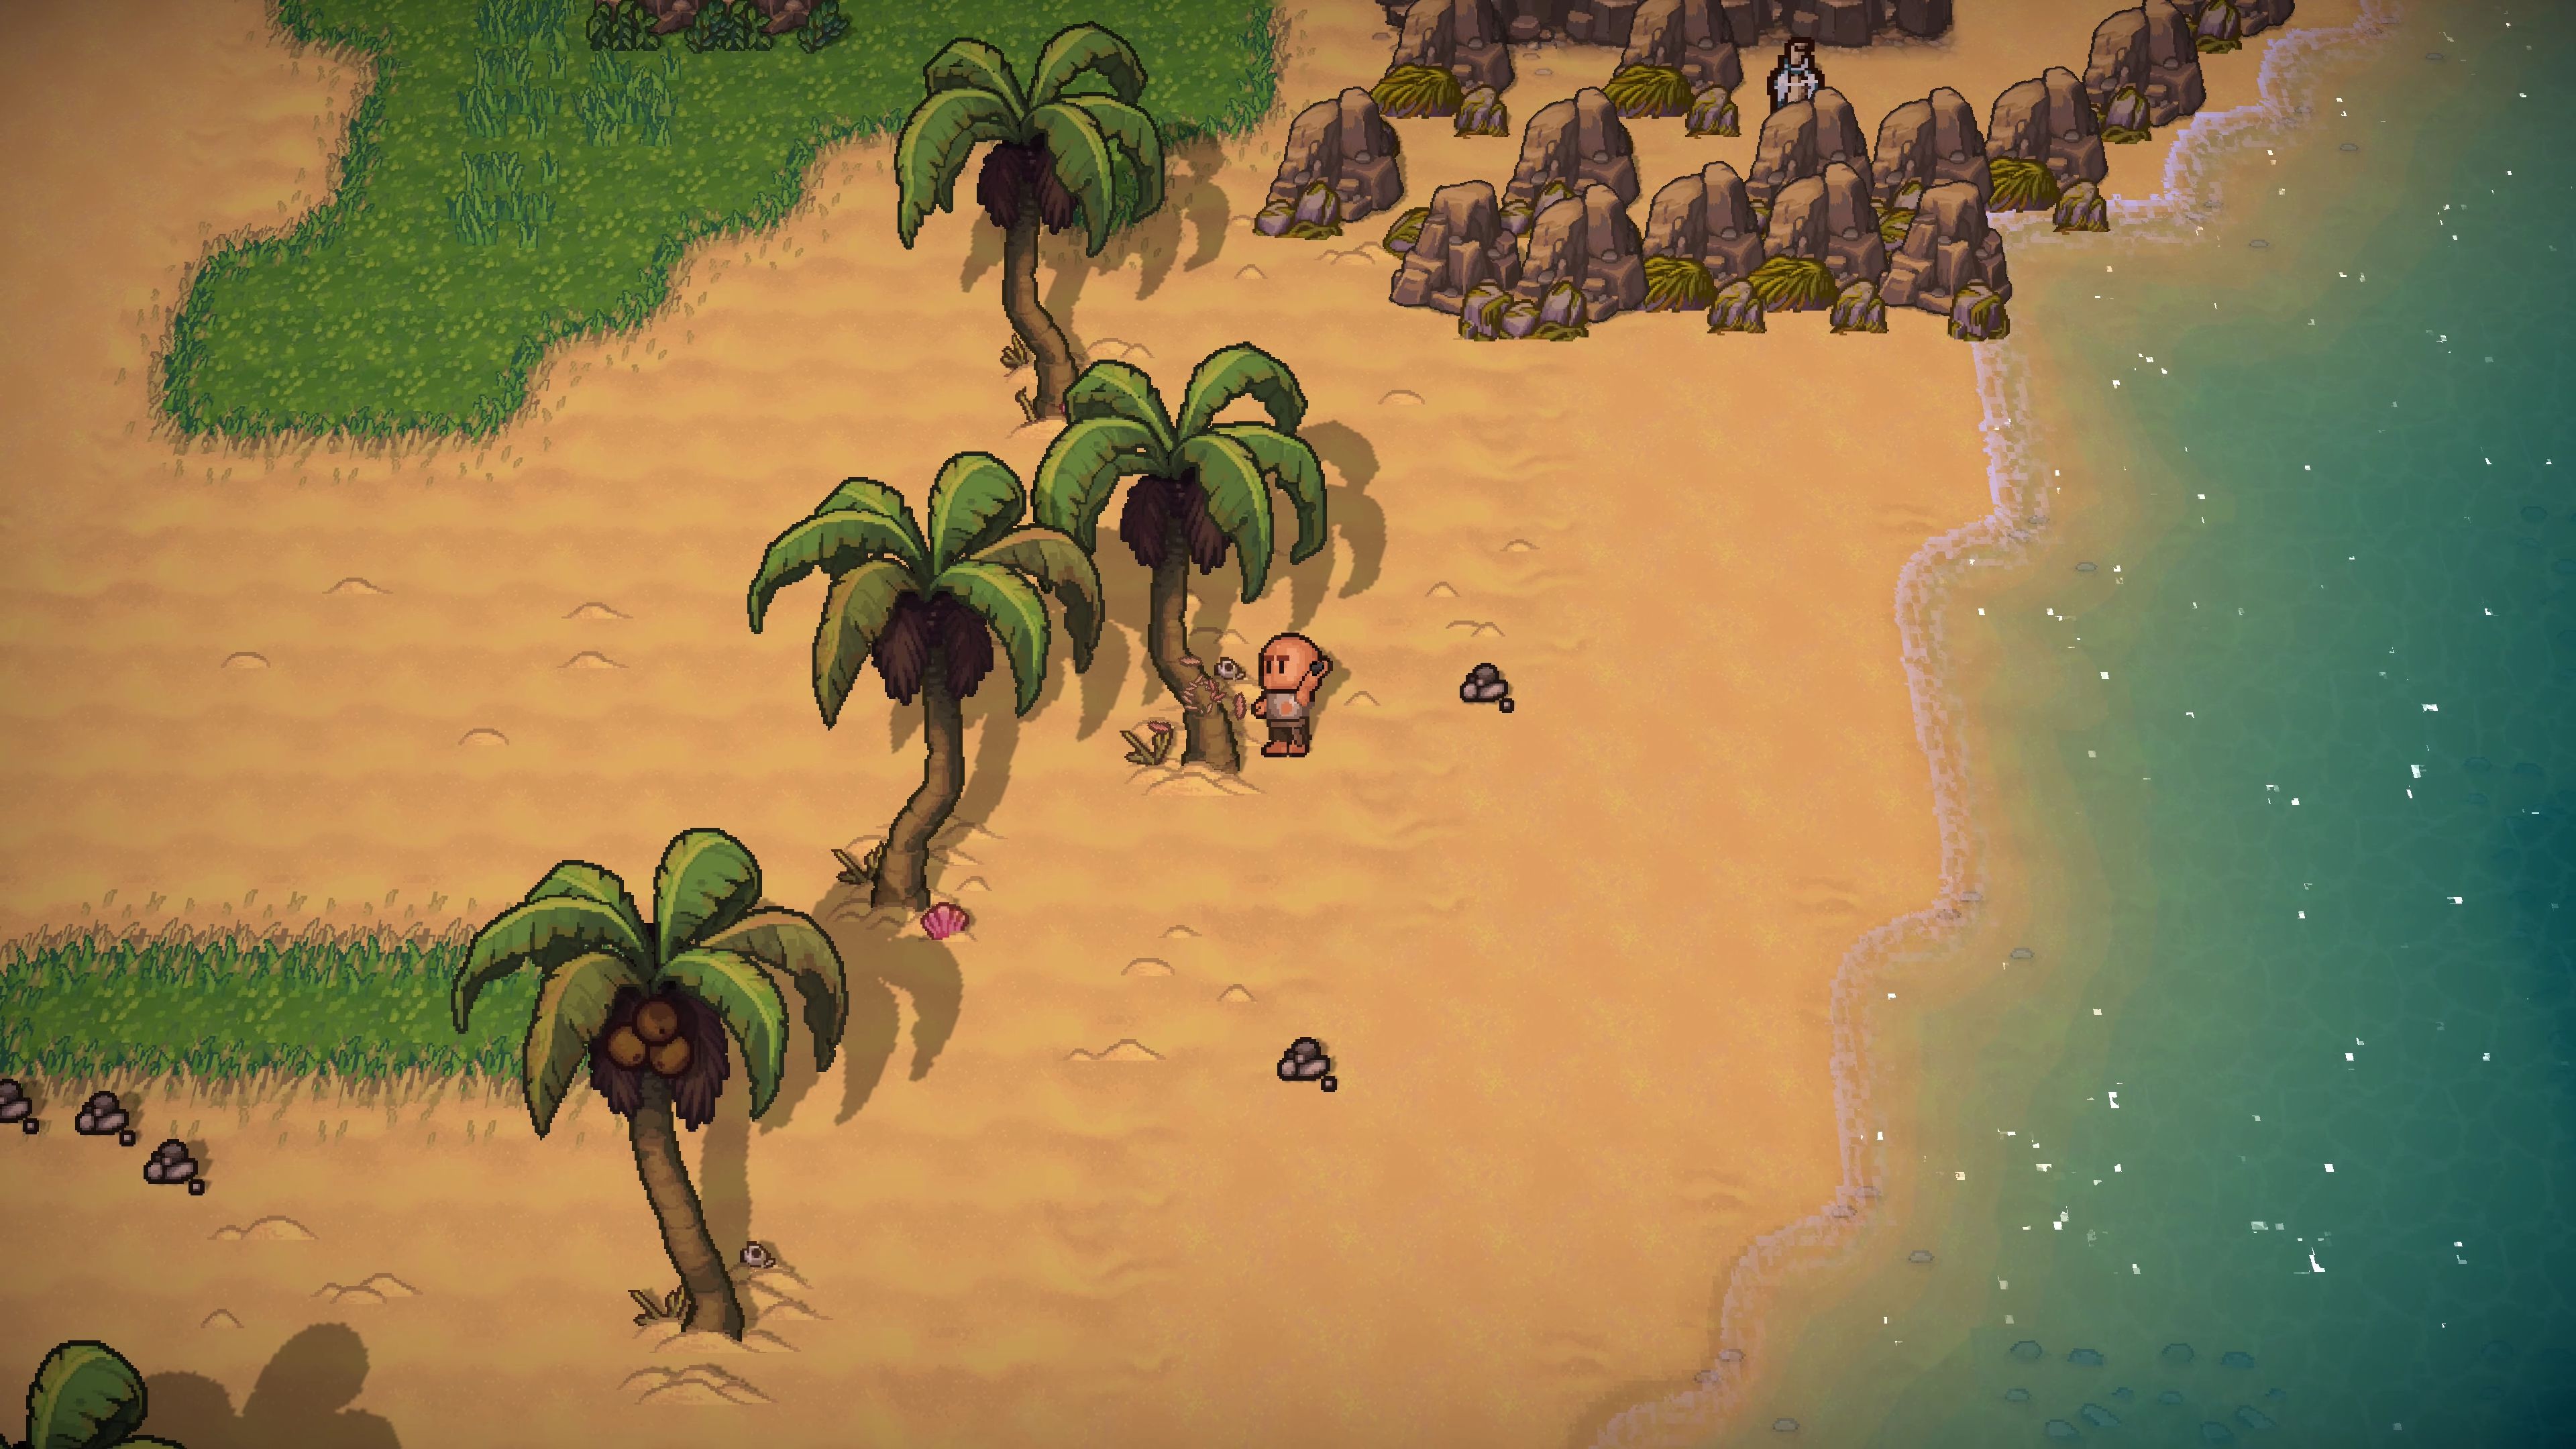 沙盒生存游戏《岛屿生存者》2020秋季发售NS与PS4版